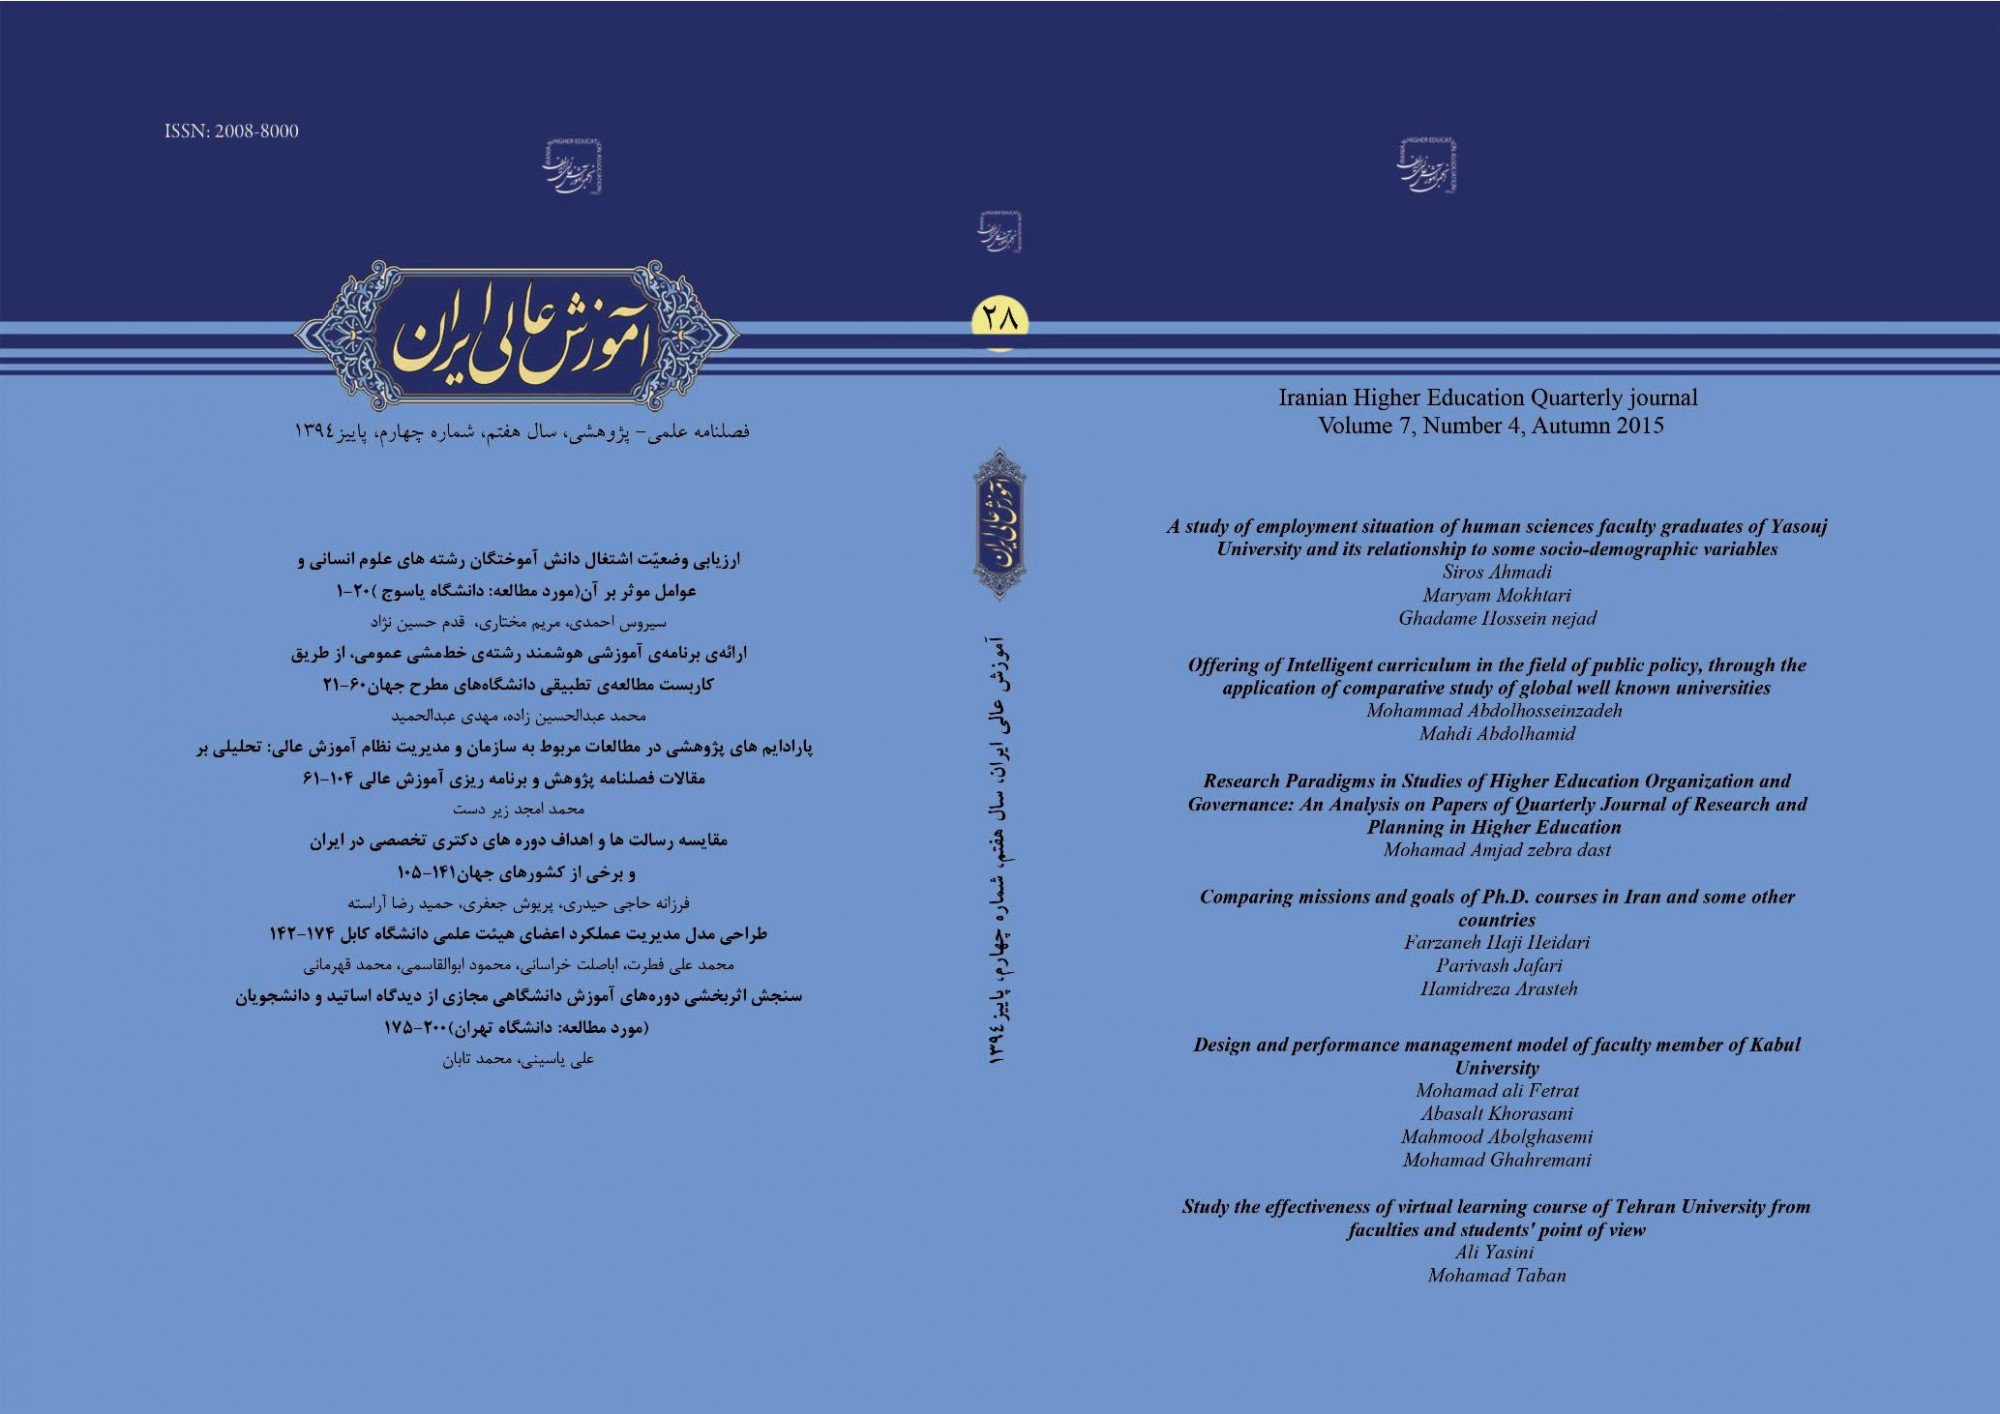 مقالات مجله آموزش عالی ایران، دوره 10، شماره 3 منتشر شد